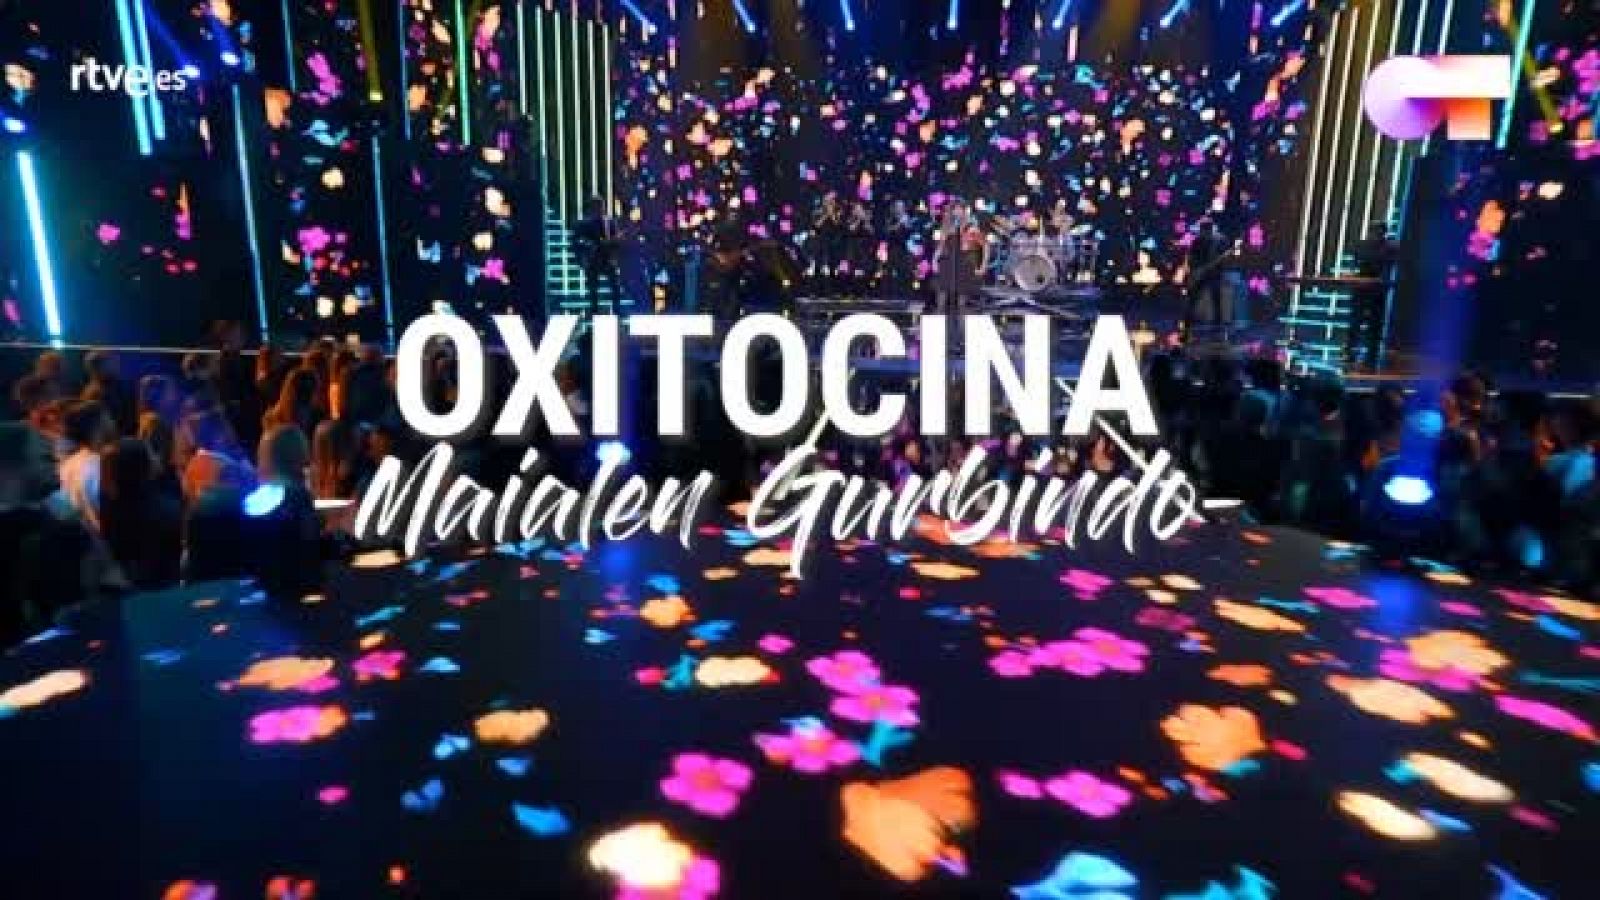 OT 2020 | Letra de "Oxitocina", canción compuesta por Maialen